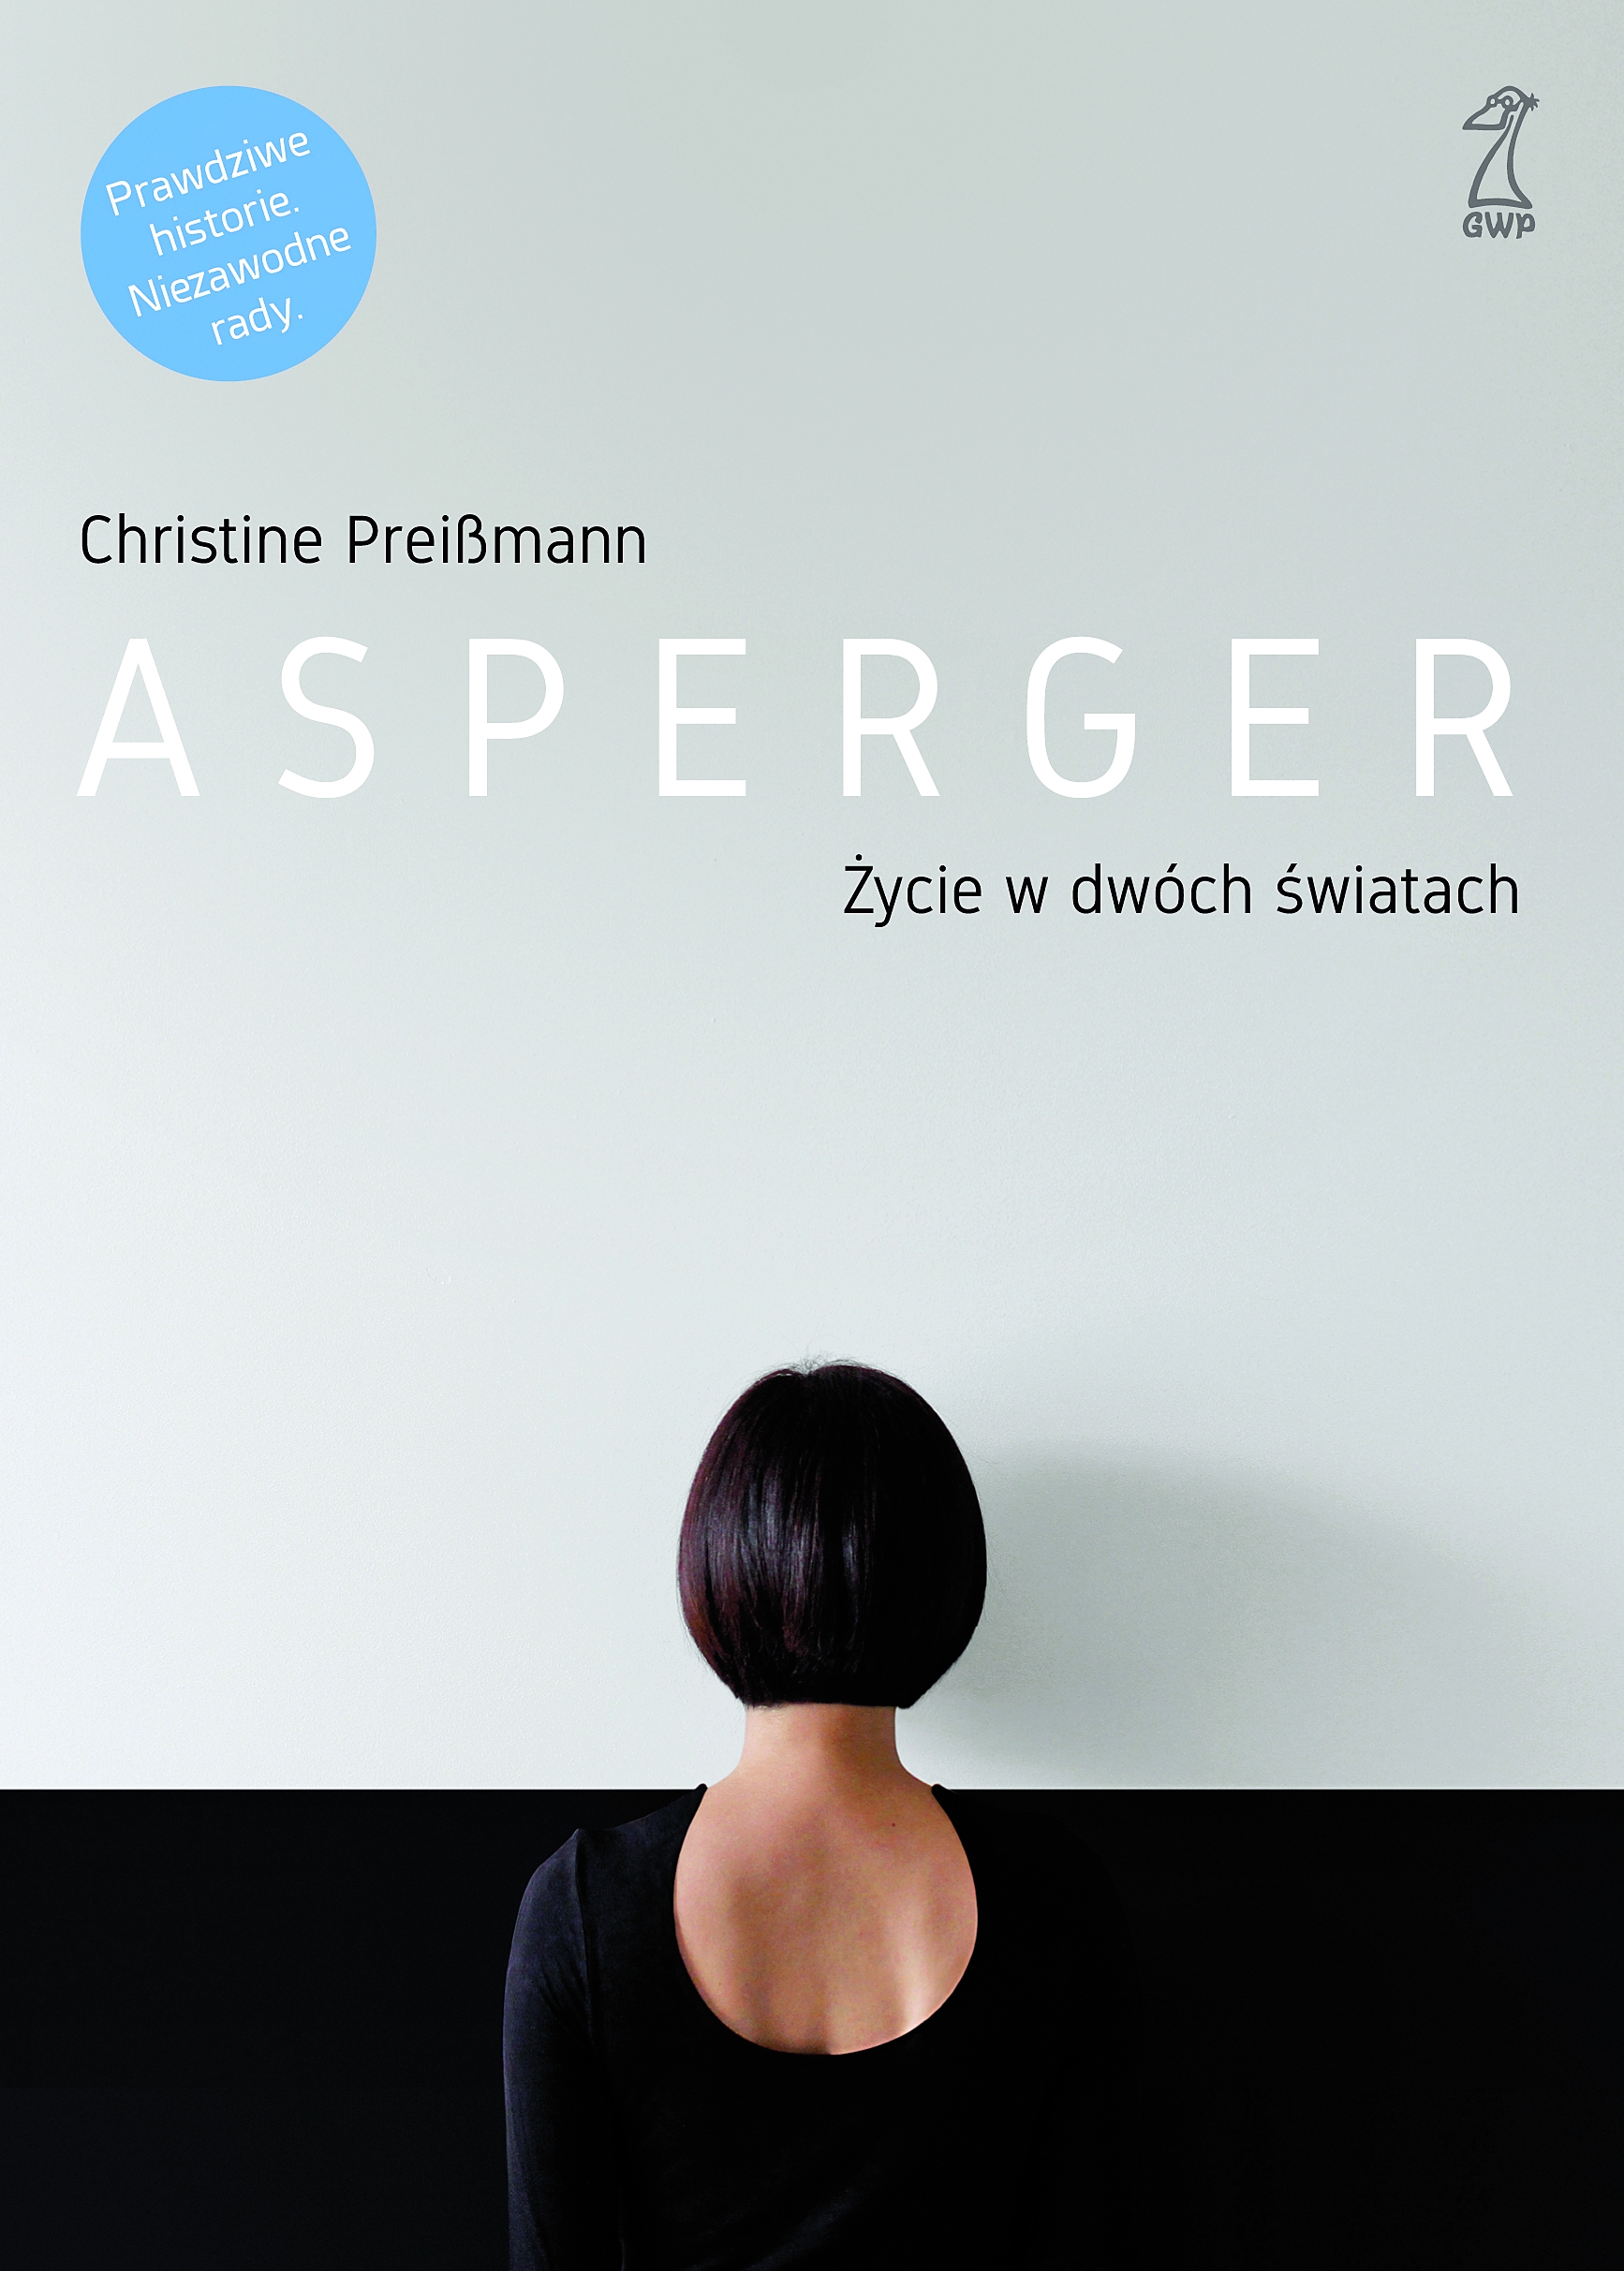 Christine Preissmann „Asperger. Życie w dwóch światach”, GWP